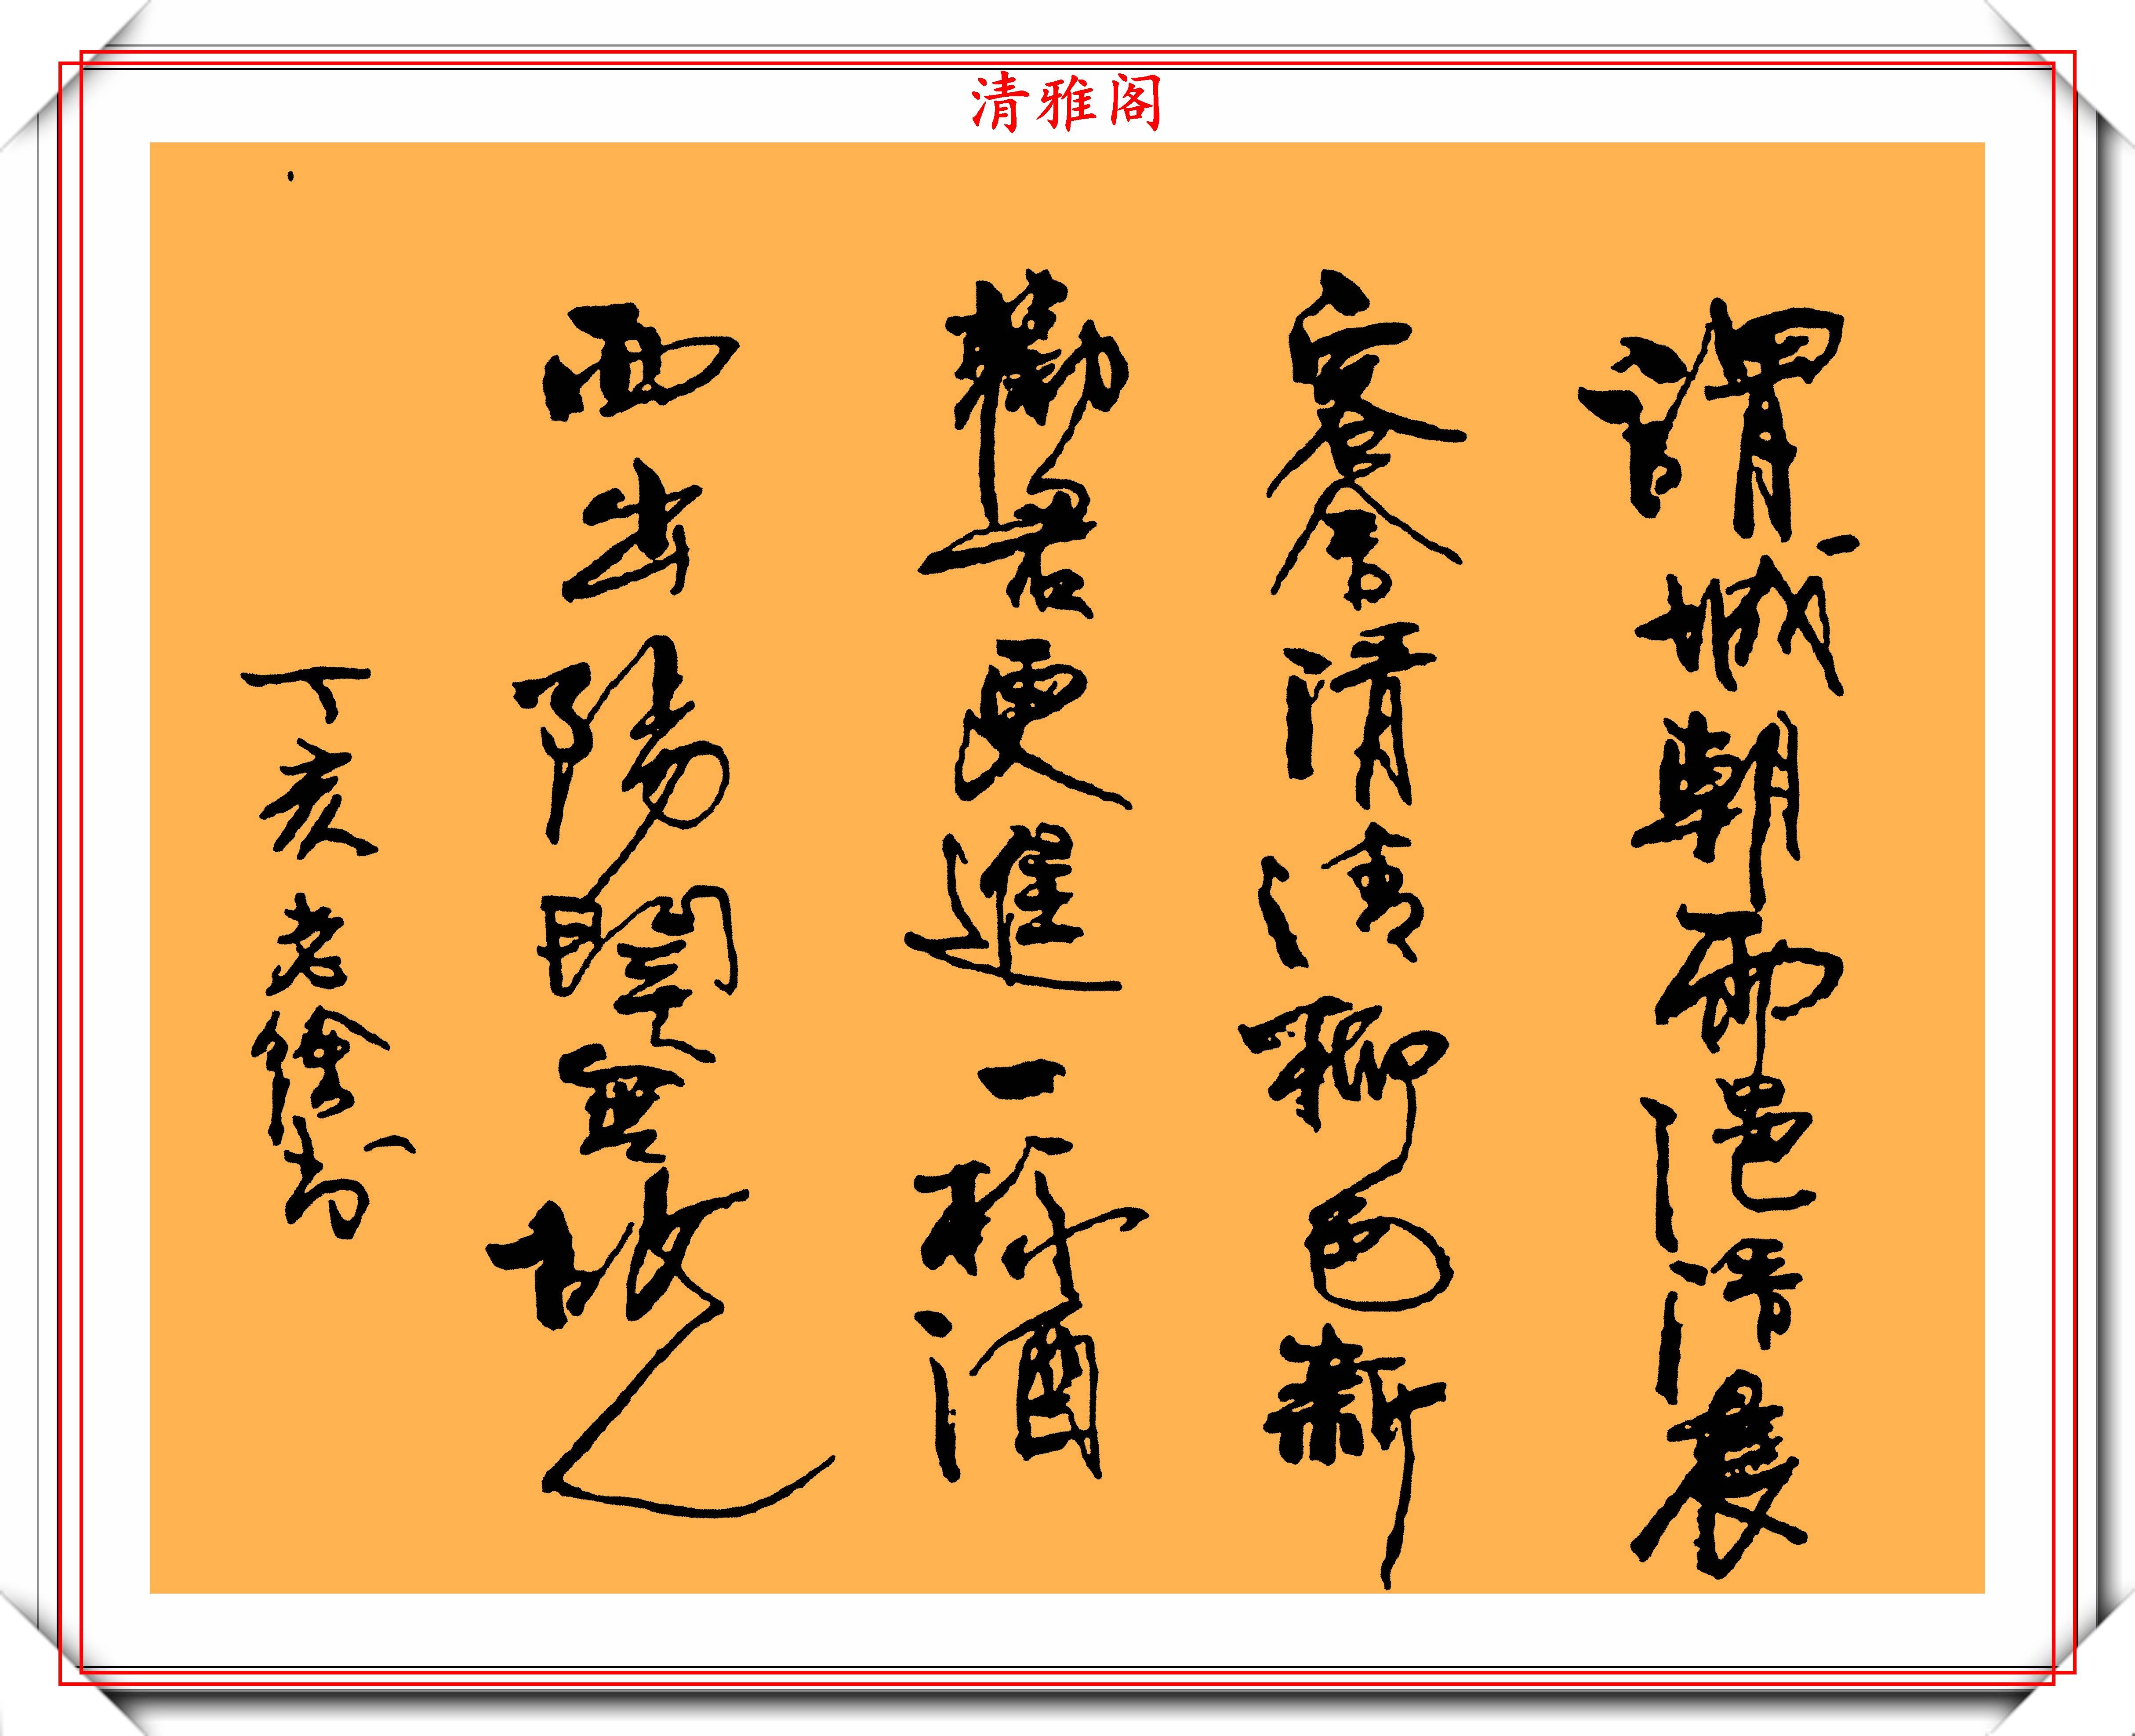 徐静蕾手写体免费字体下载 - 中文字体免费下载尽在字体家